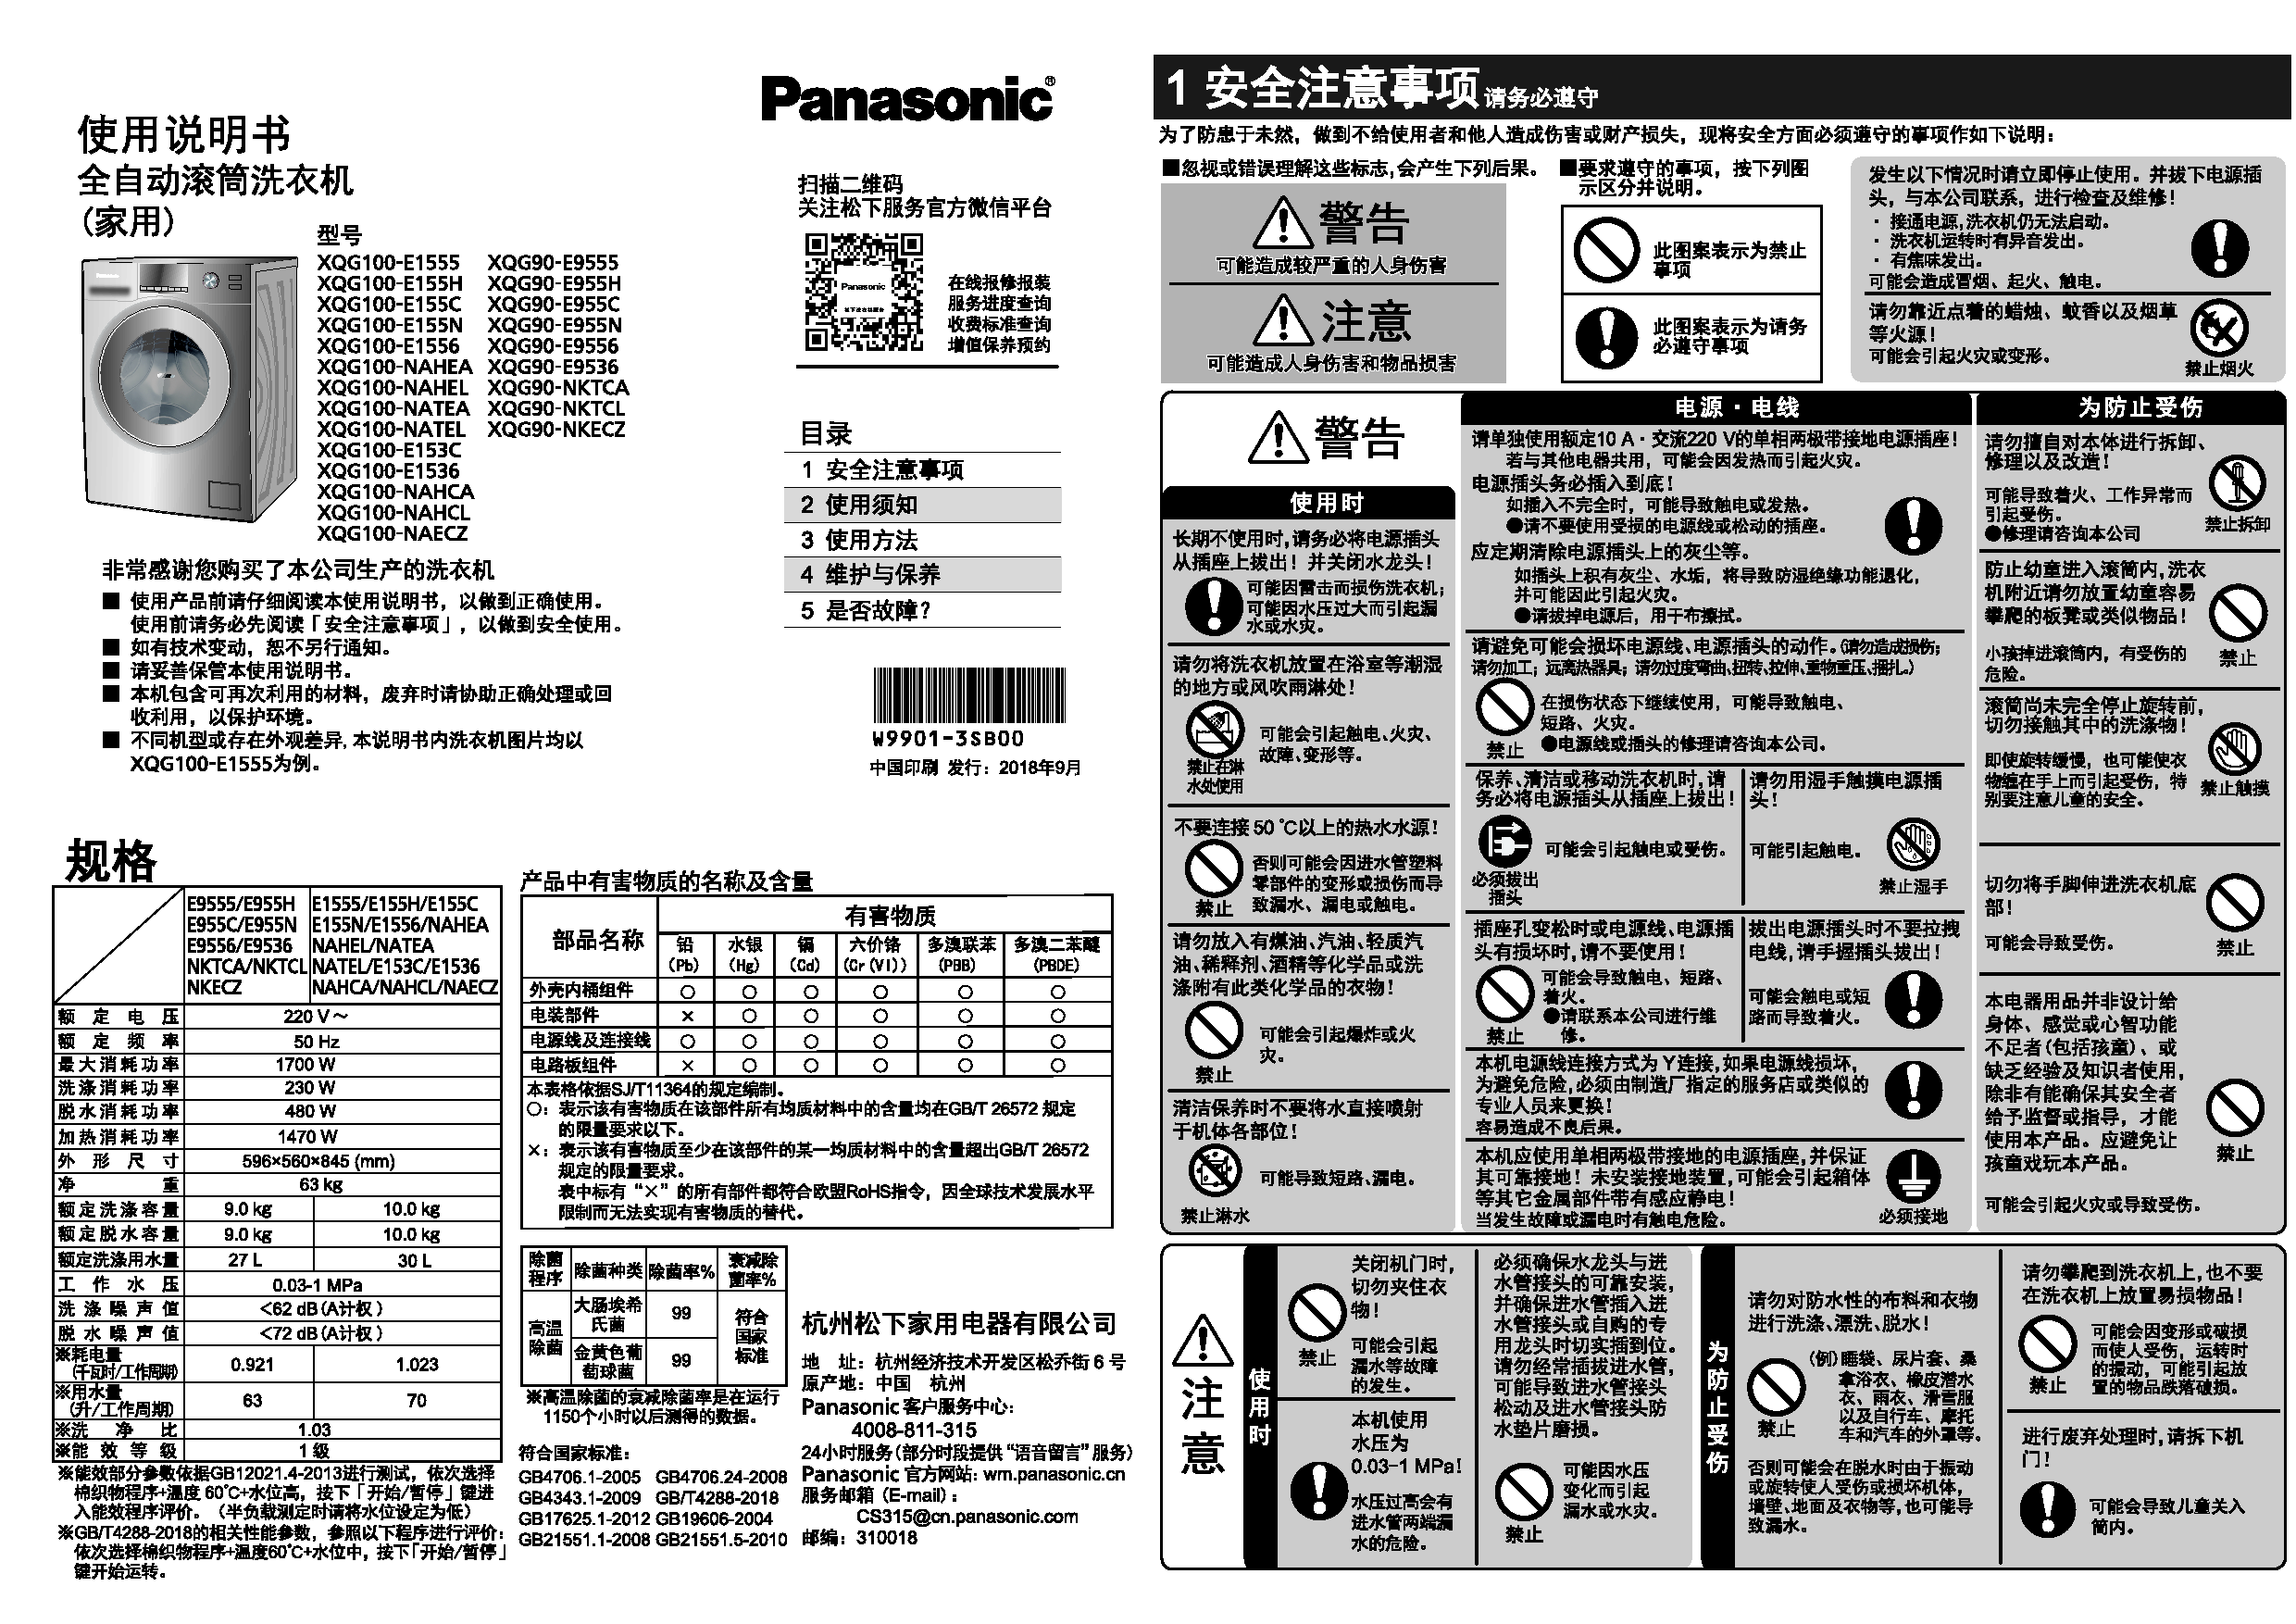 松下 Panasonic XQG100-E1536, XQG100-NAHCL, XQG90-E955C, XQG90-NKTCA 使用说明书 封面